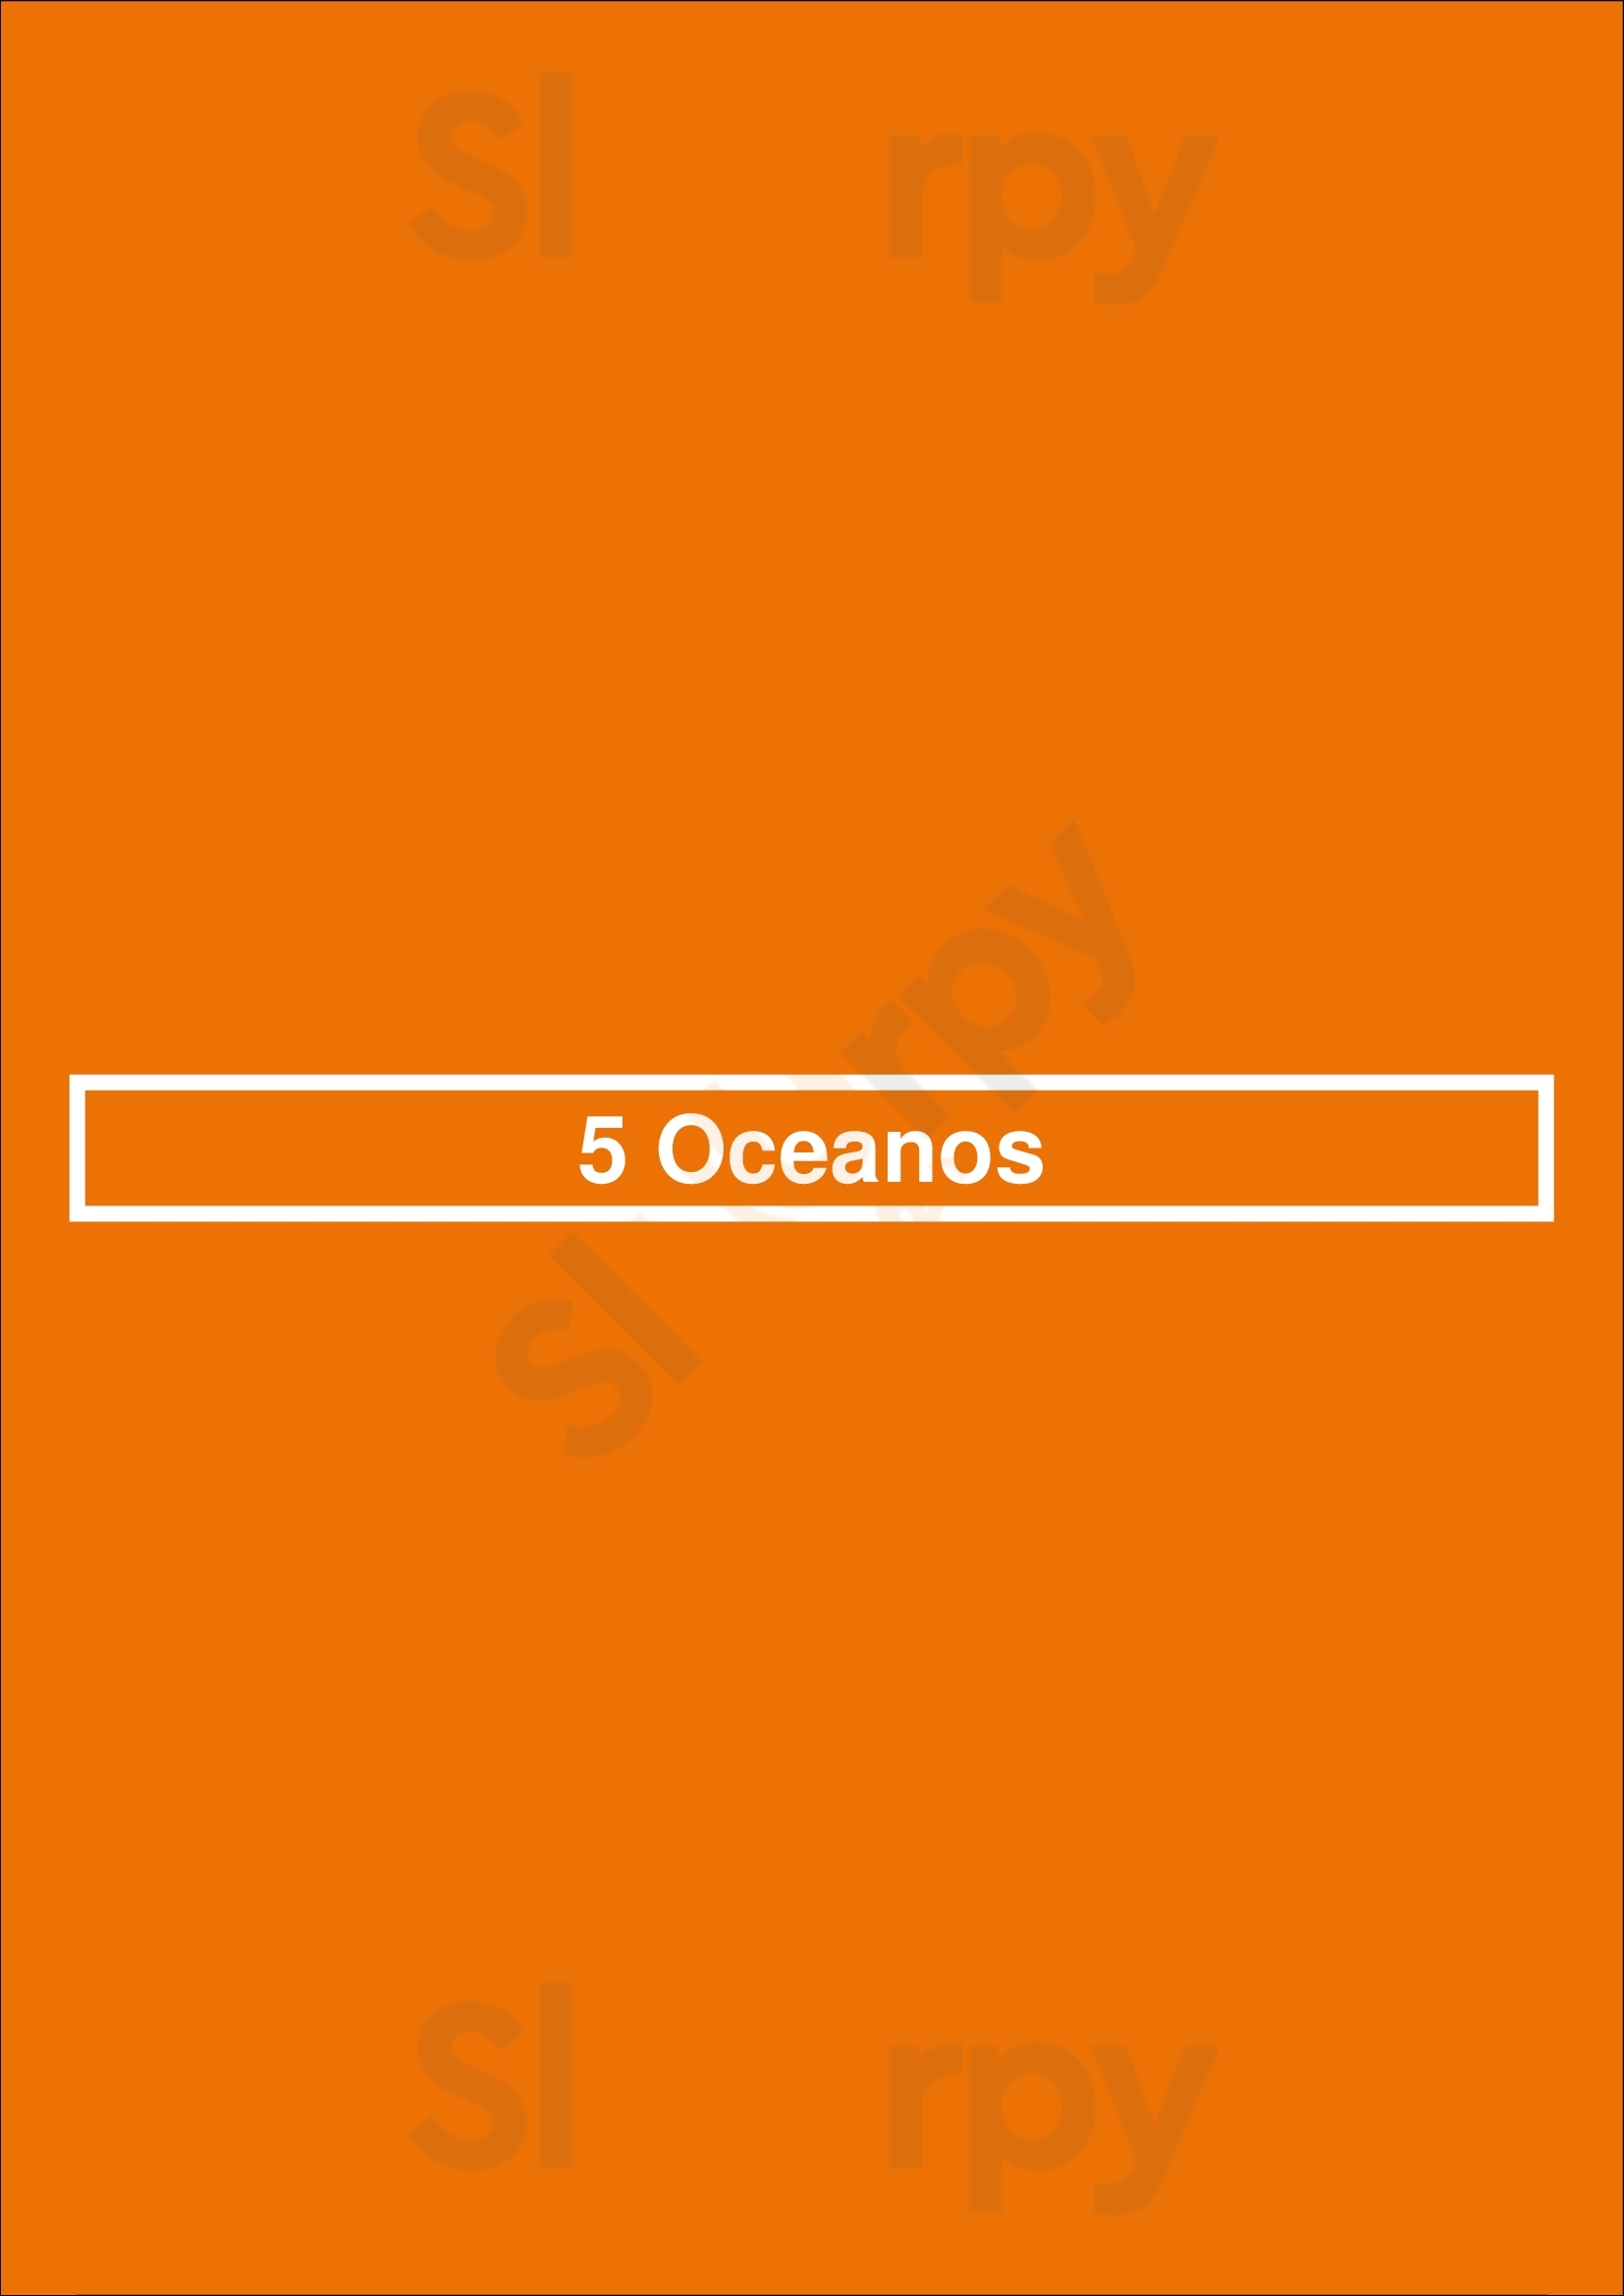 5 Oceanos Lisboa Menu - 1